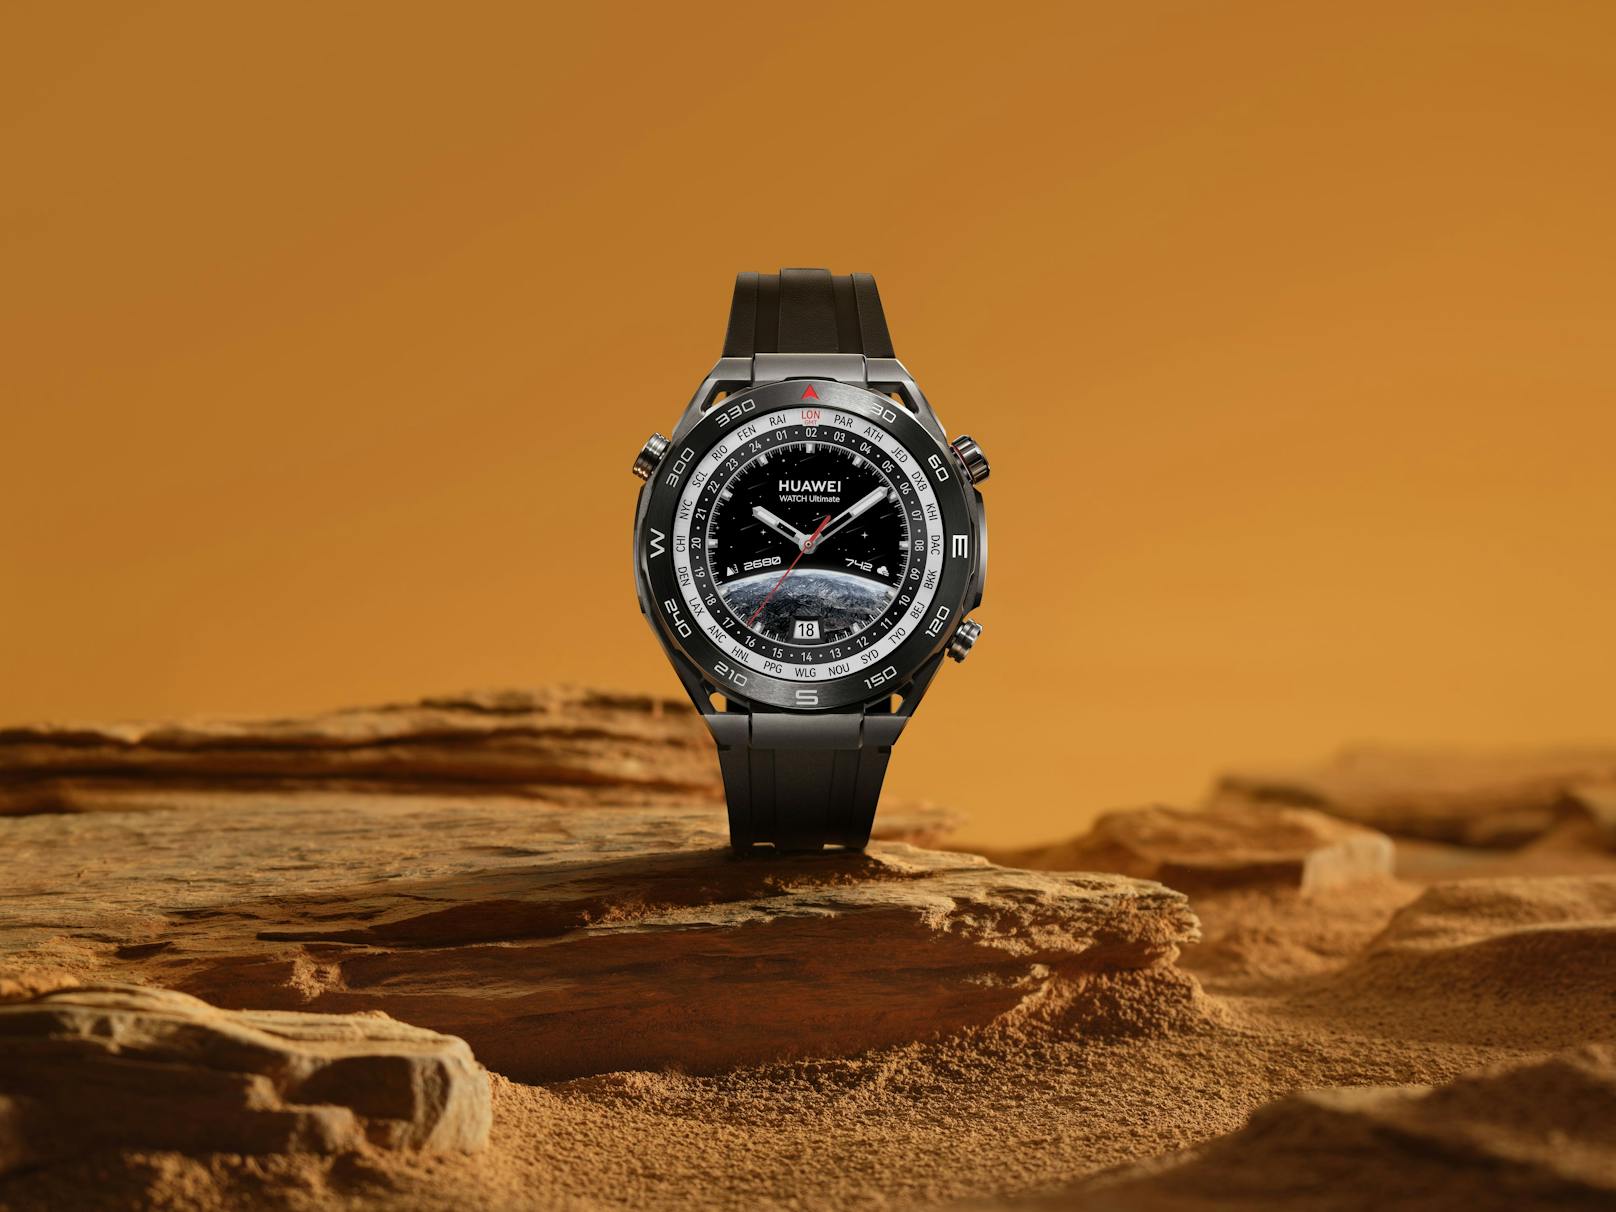 Das Gehäuse der Huawei Watch Ultimate besteht laut Unternehmen "aus einer innovativen amorphen Legierung auf Zirkoniumbasis"